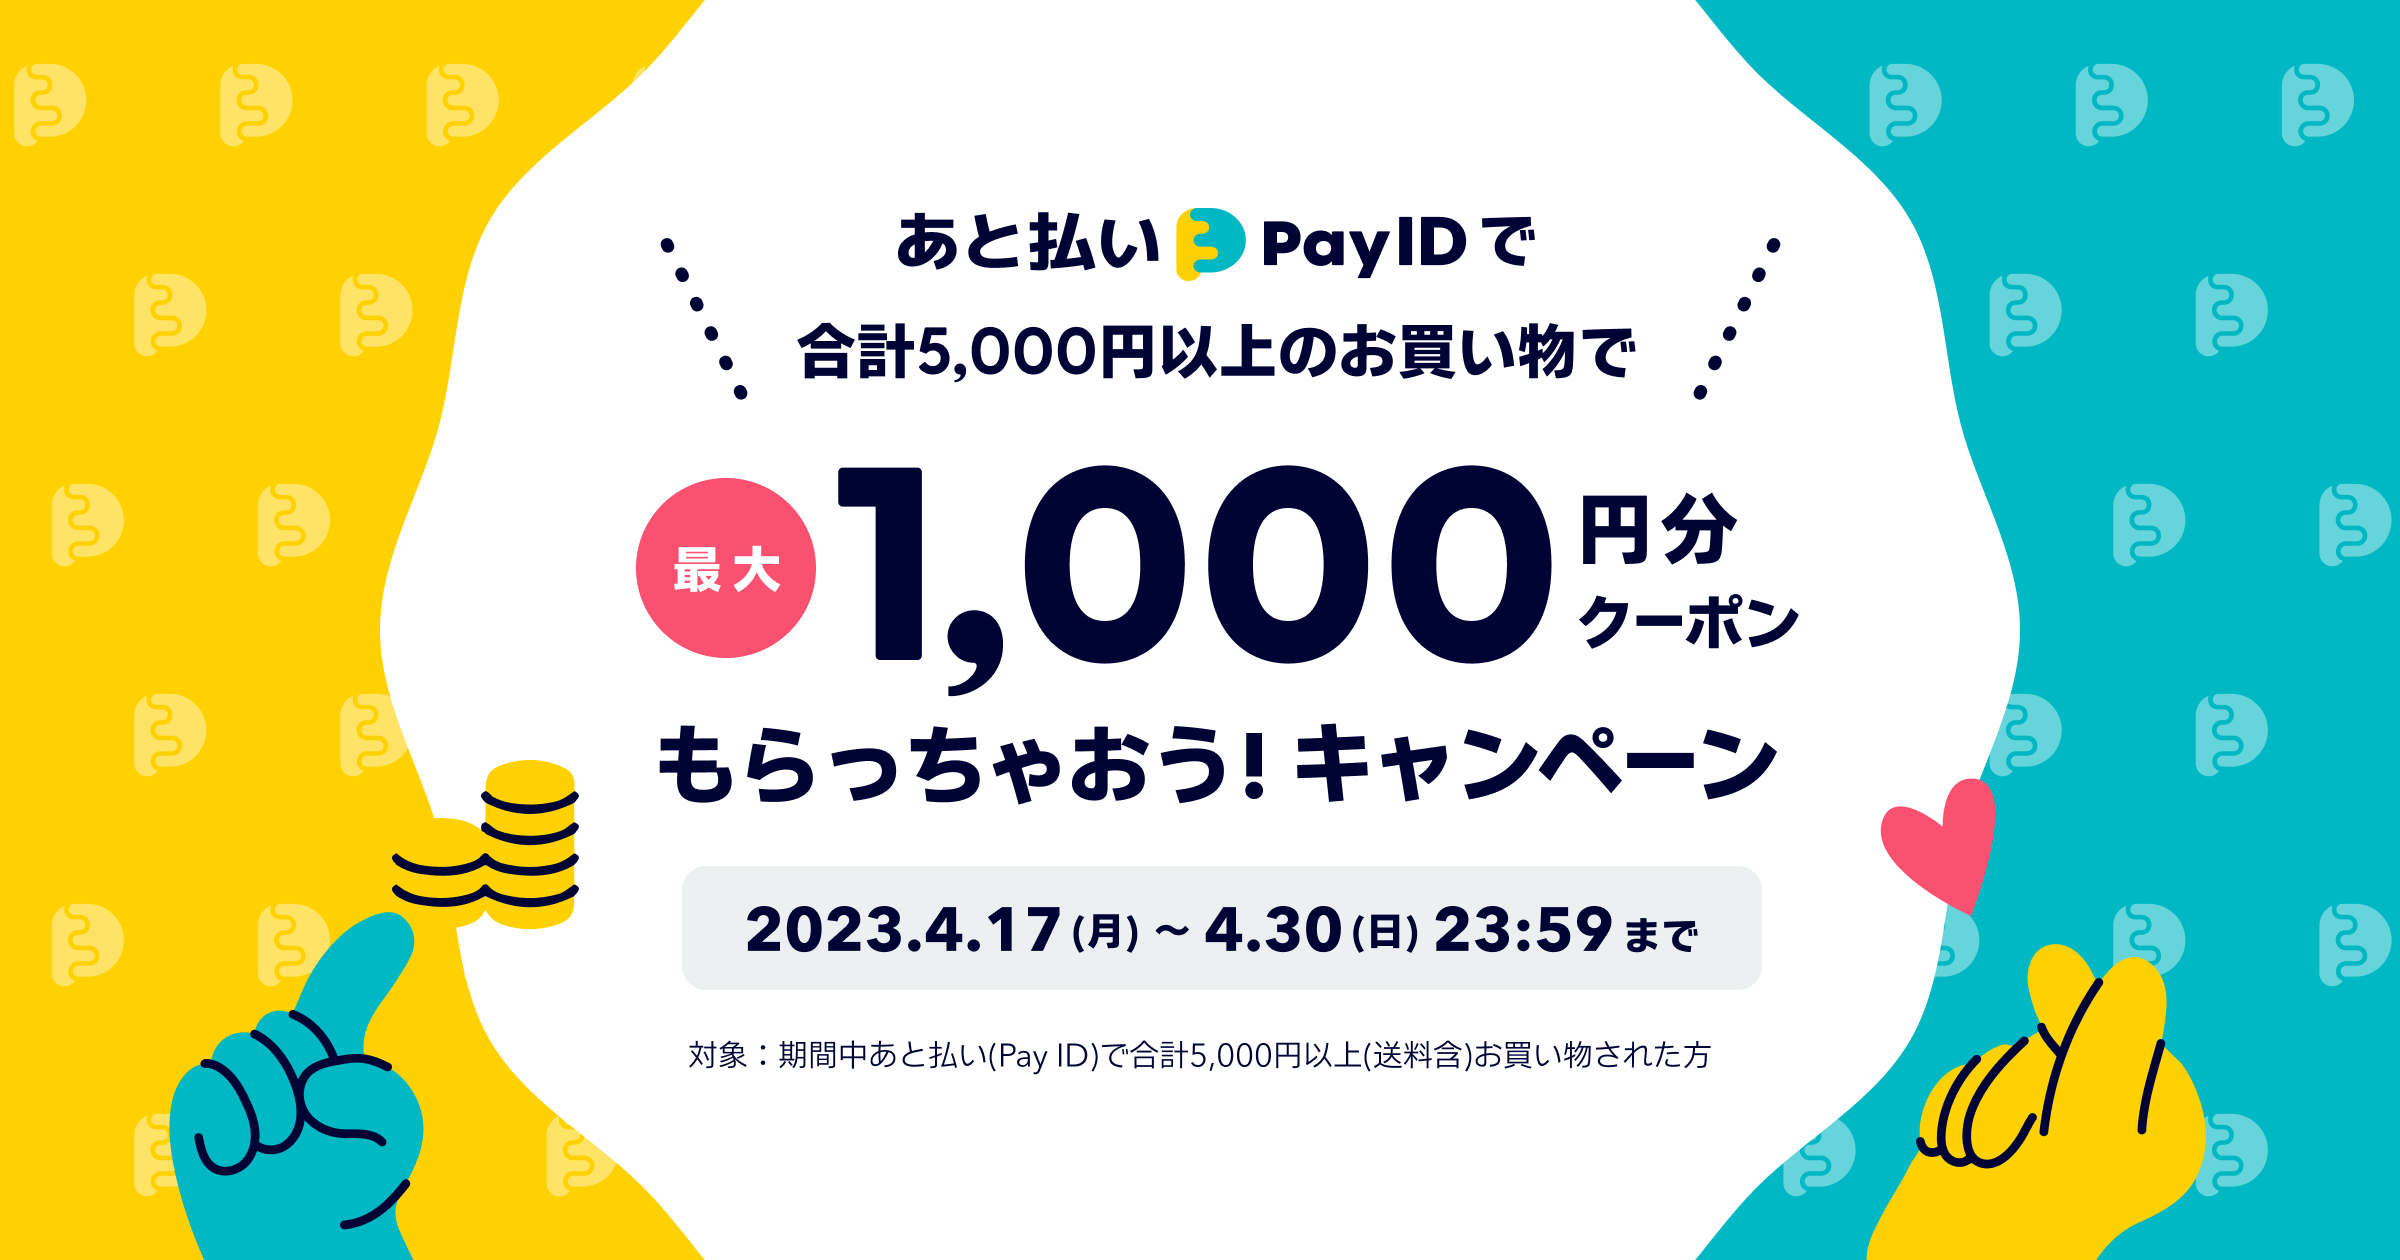 宇都宮餃子さつき「あと払い（Pay ID）」で最大1,000円分のクーポンもらっちゃおうキャンペーン